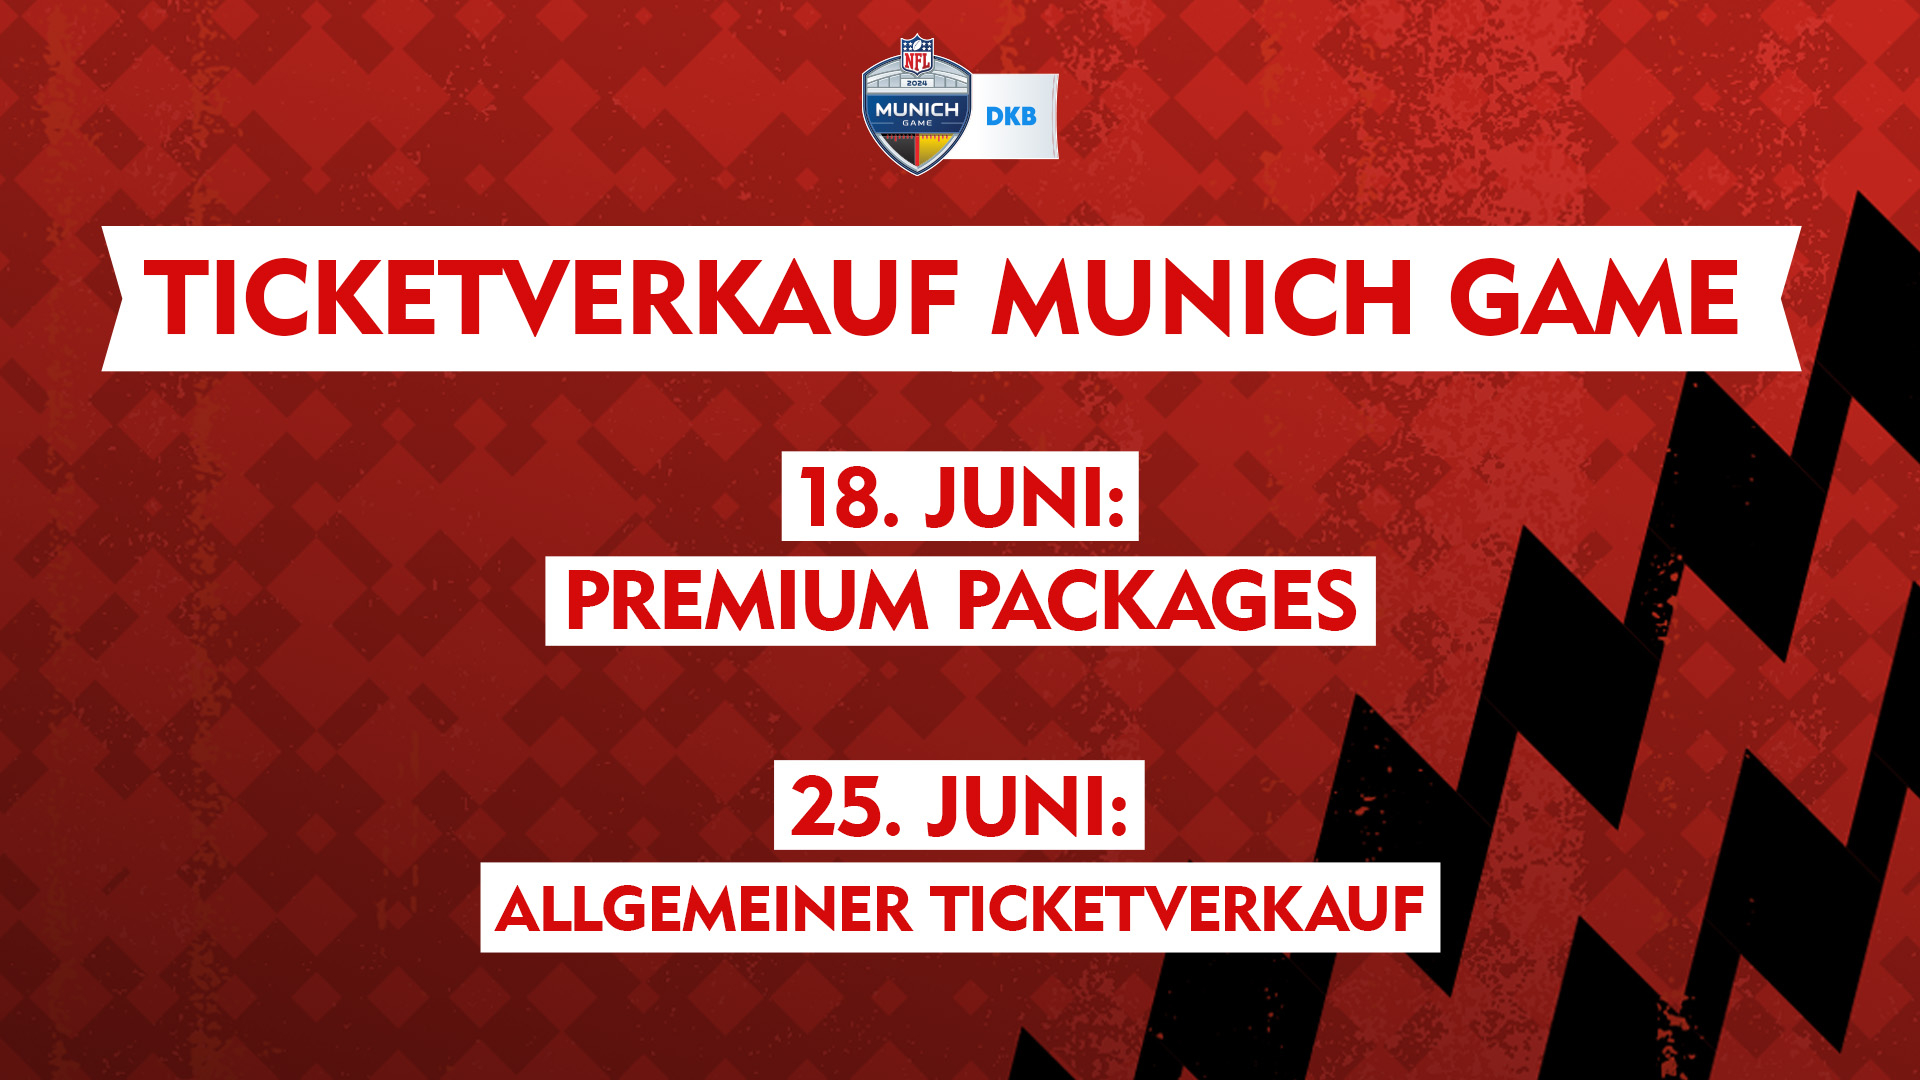 FootballR - NFL - Eine Werbegrafik mit rotem Hintergrund und schwarzem Zickzackmuster hebt ein Schildlogo mit „Munich Game“ und „DKB“ oben hervor. Sie kündigt den Beginn des Ticketverkaufs an: „TICKETVERKAUF MUNICH GAME – NFL Tickets“. Wichtige Termine sind „18. Juni: Premium Packages“ und „25. Juni: Allgemeiner Ticketverkauf“, in Weiß auf Rot. Diese Beschreibung wurde automatisch generiert.